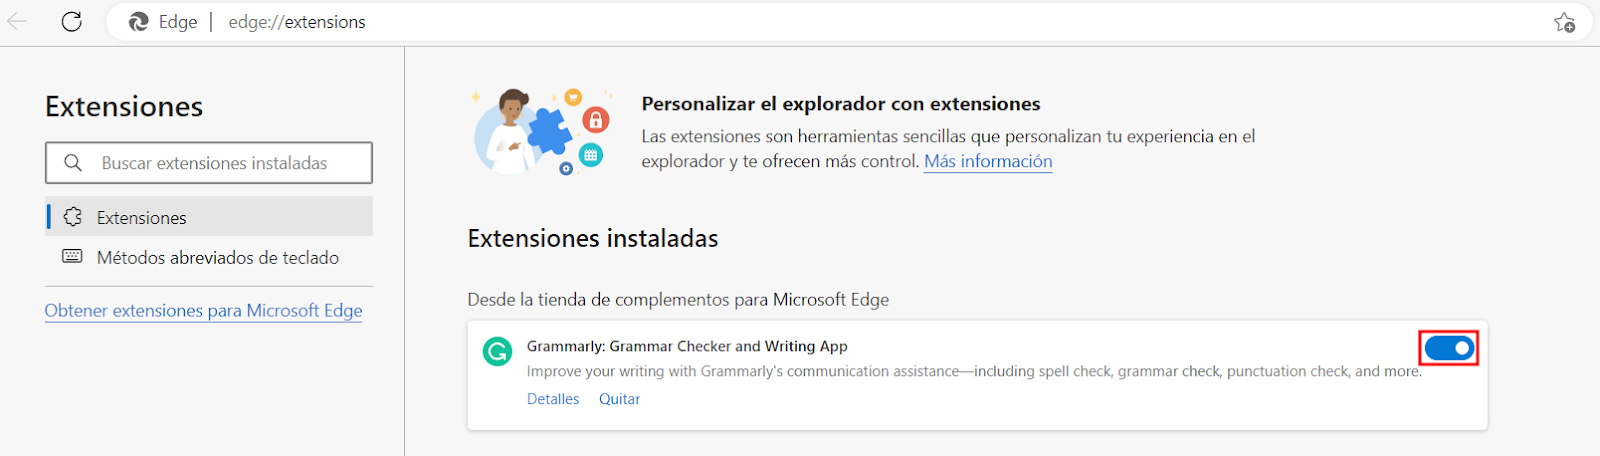 Ventana de Extensiones instaladas de Microsoft Edge